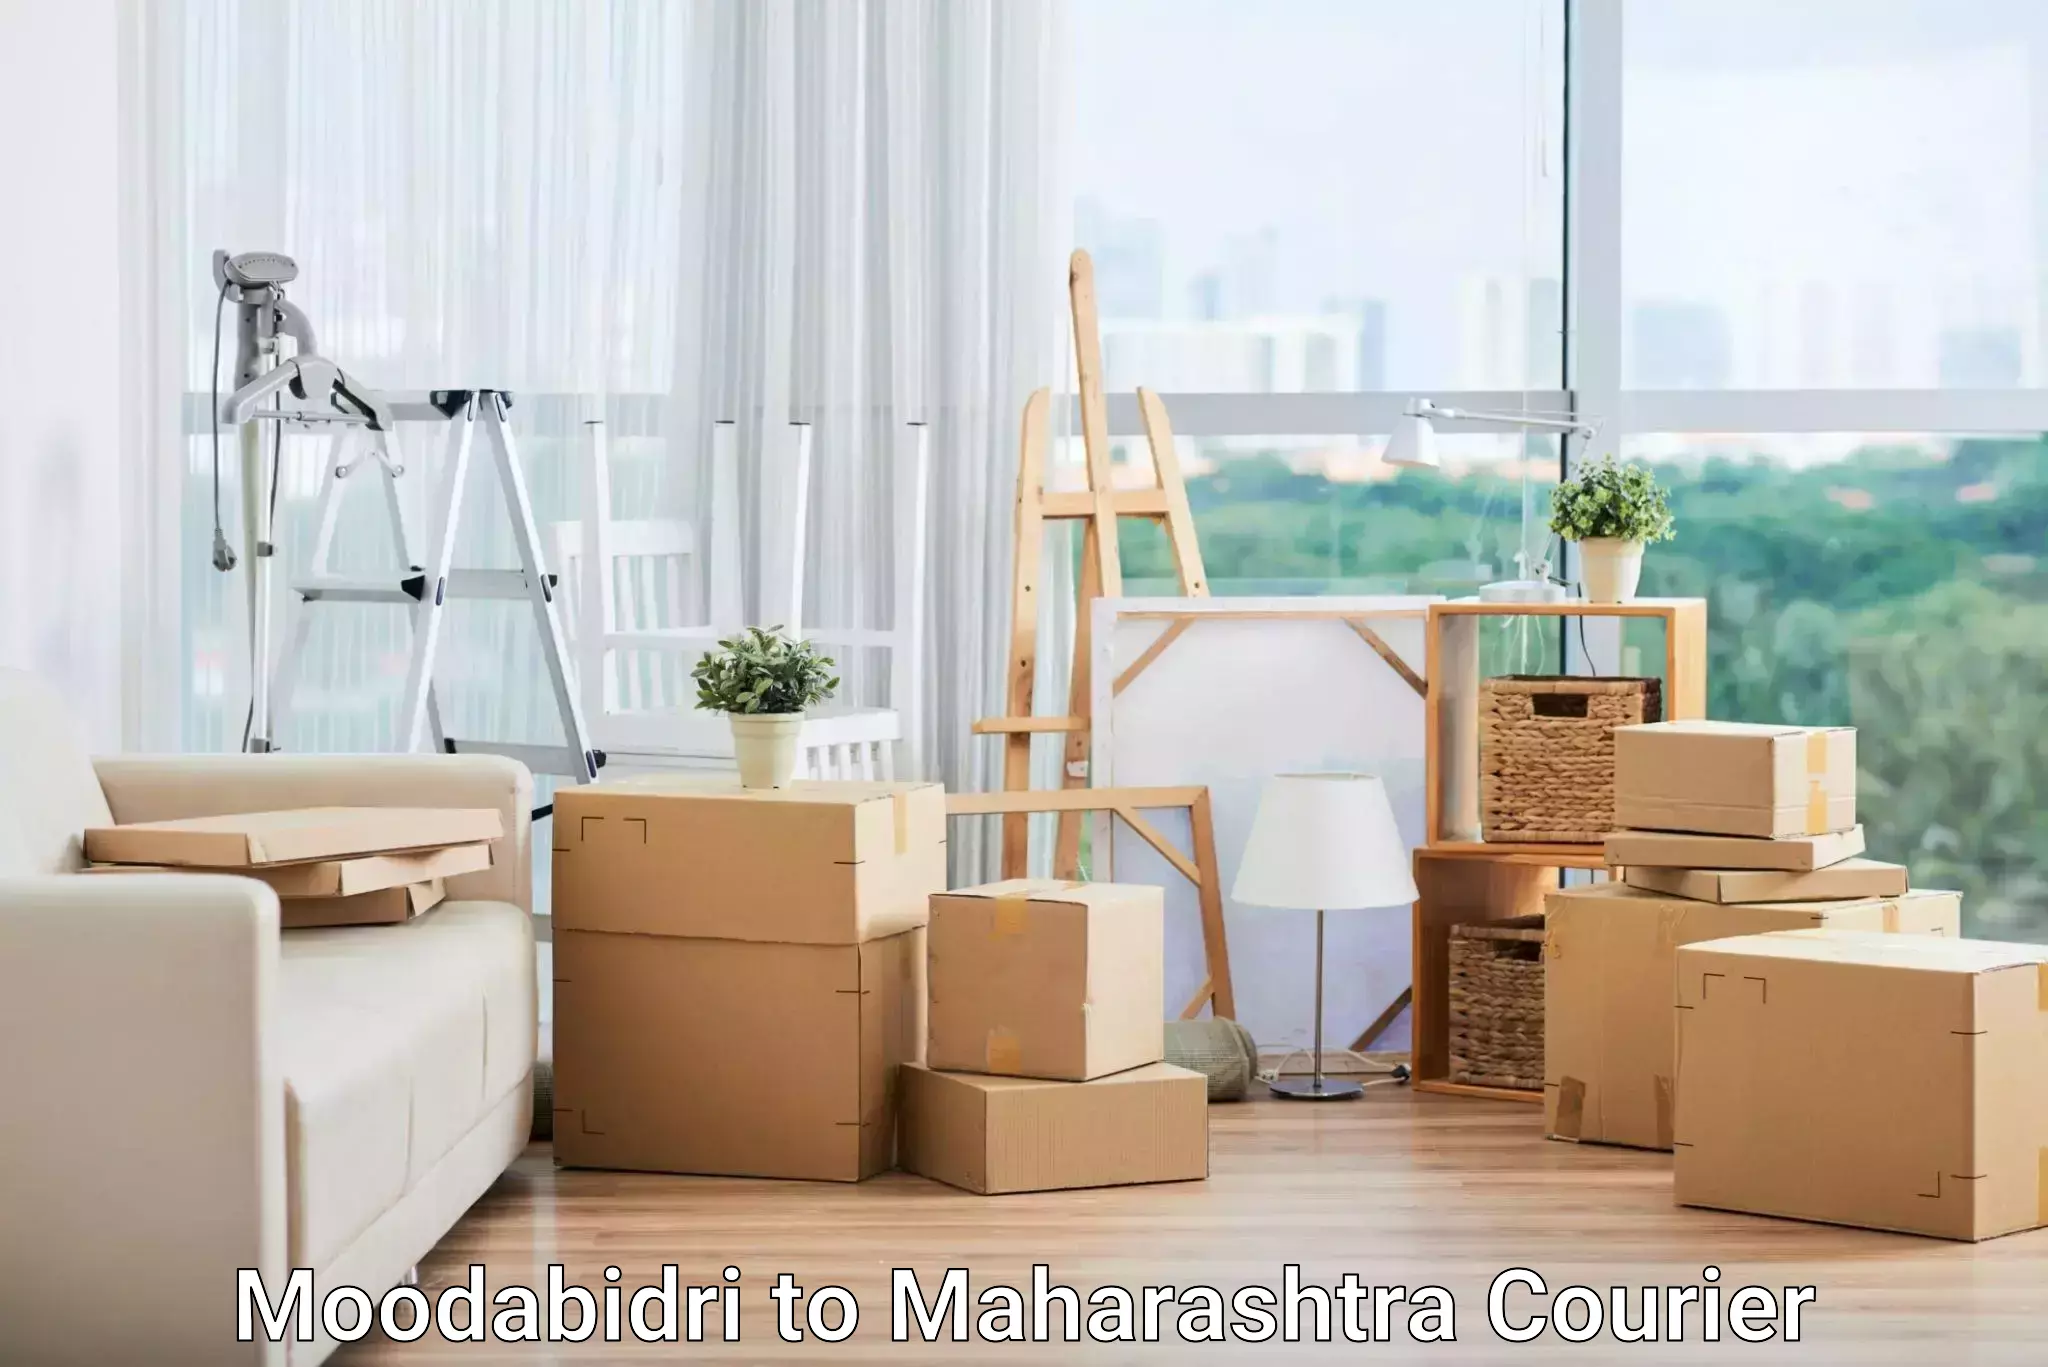 On-call courier service Moodabidri to Maharashtra